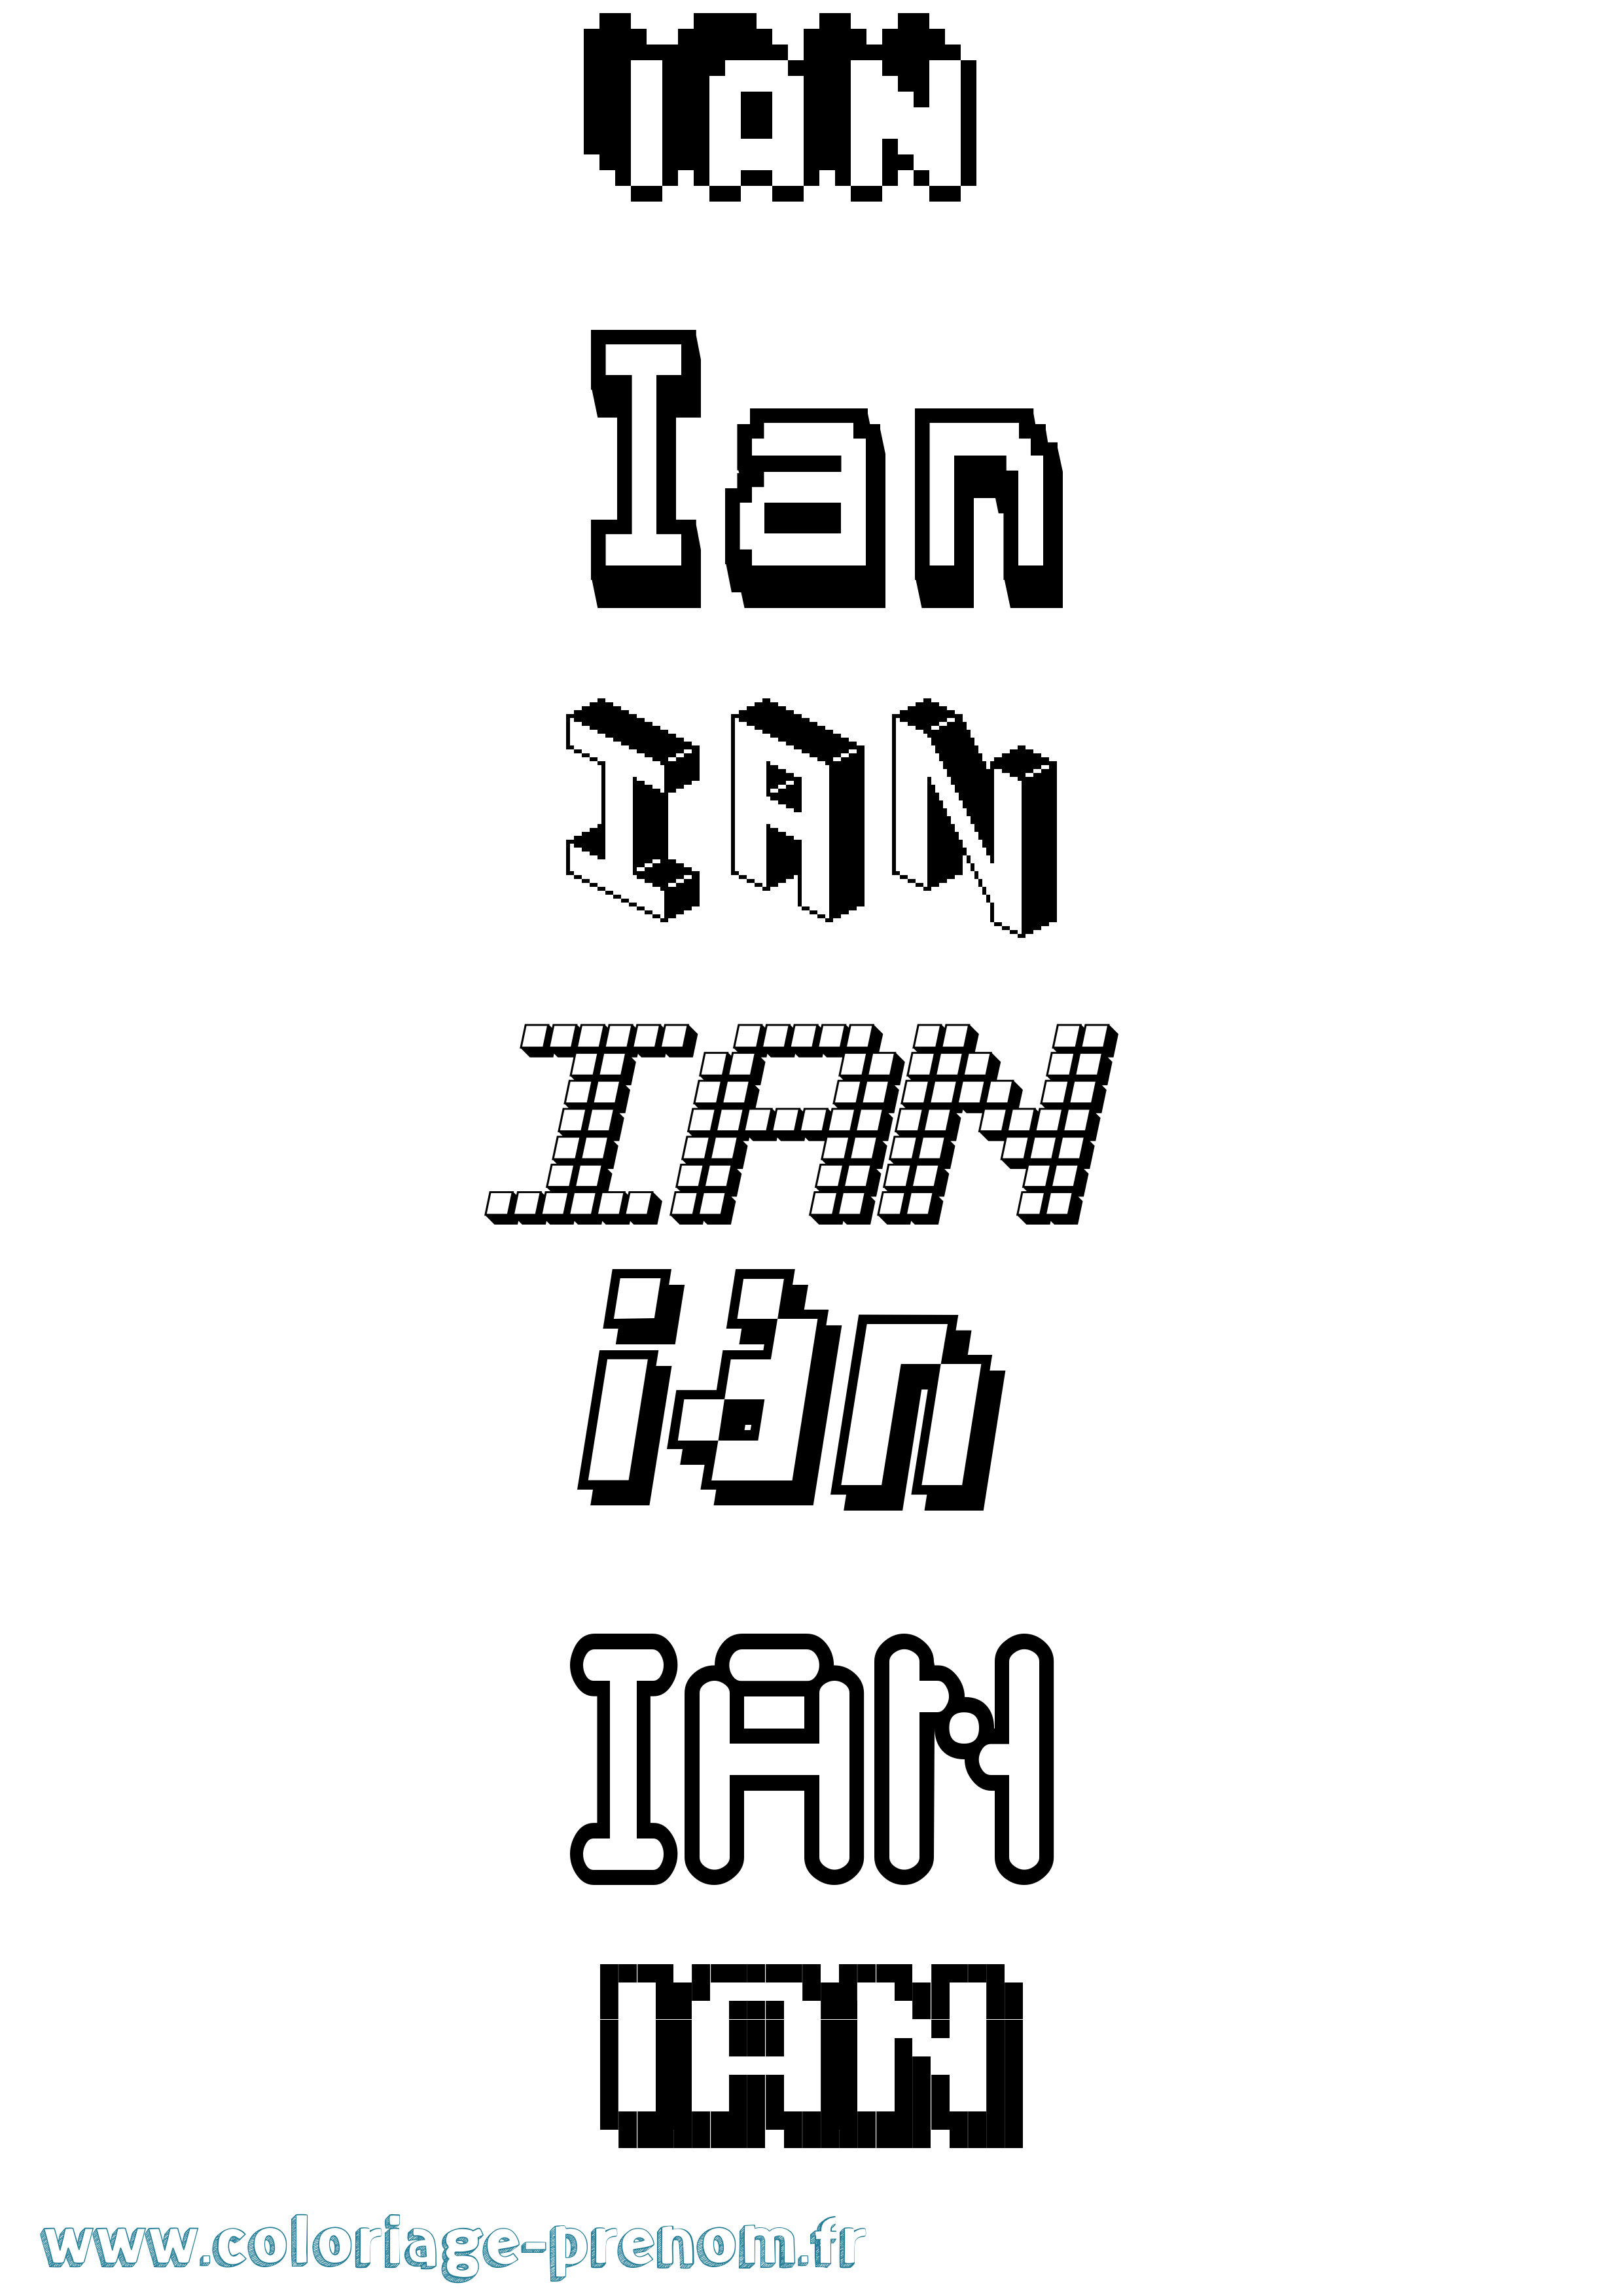 Coloriage prénom Ian Pixel